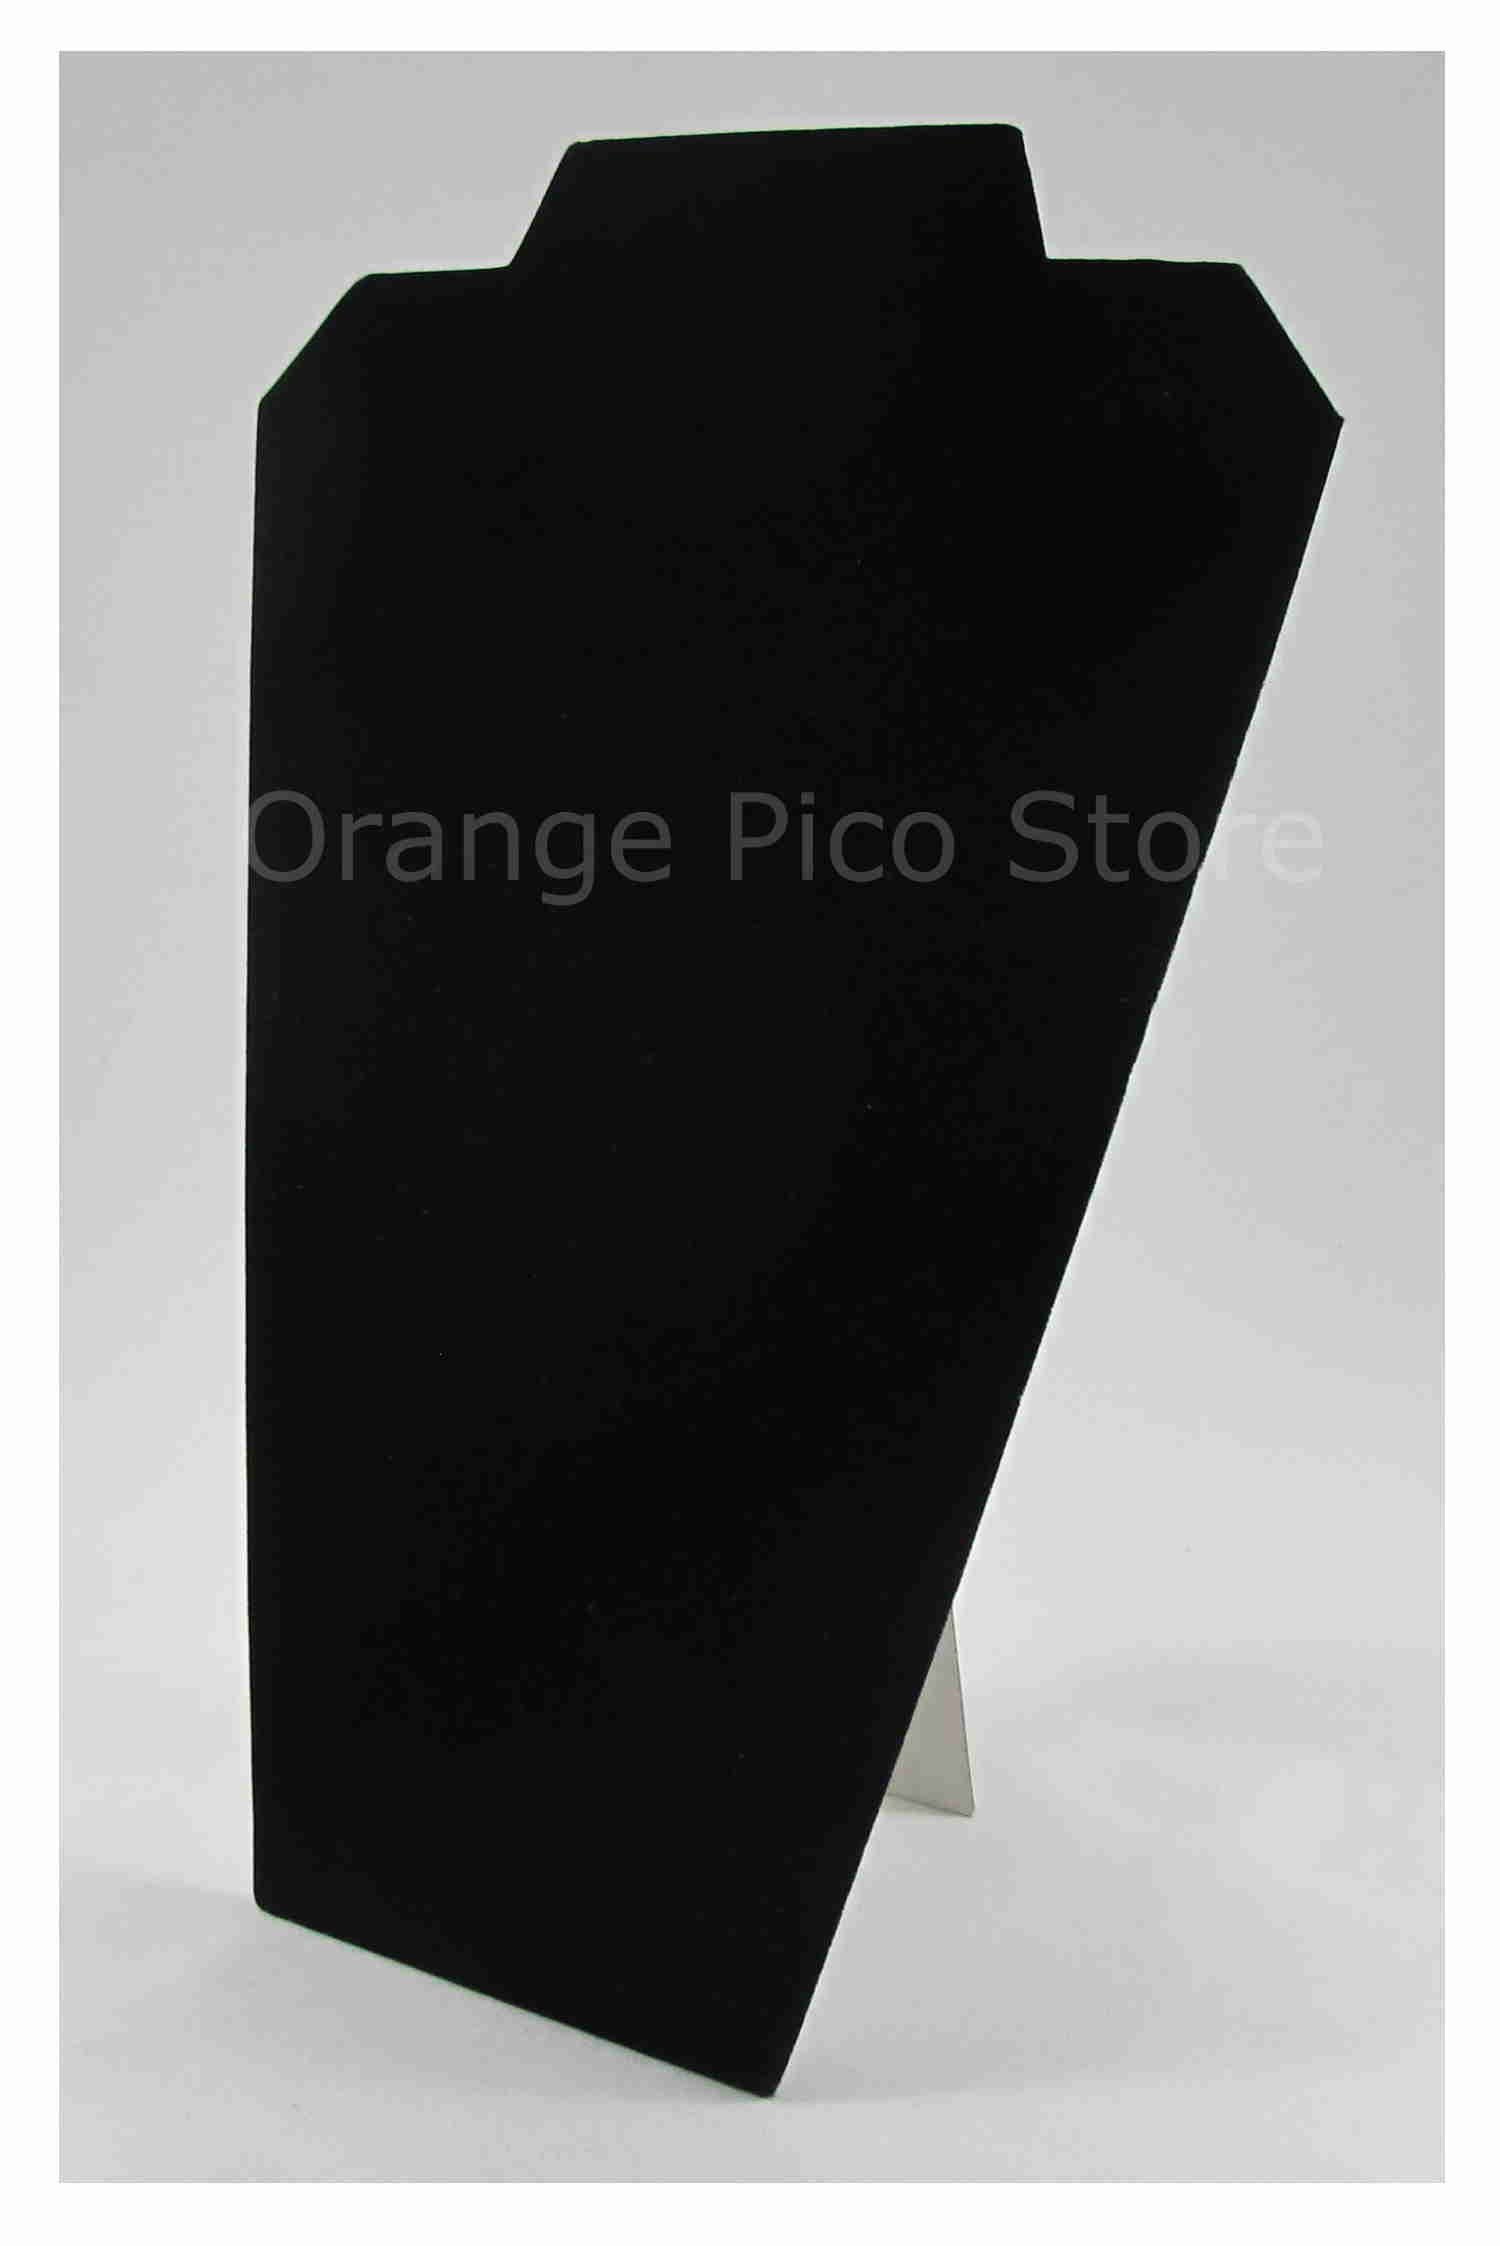 Black Velvet Padded Display with Easel